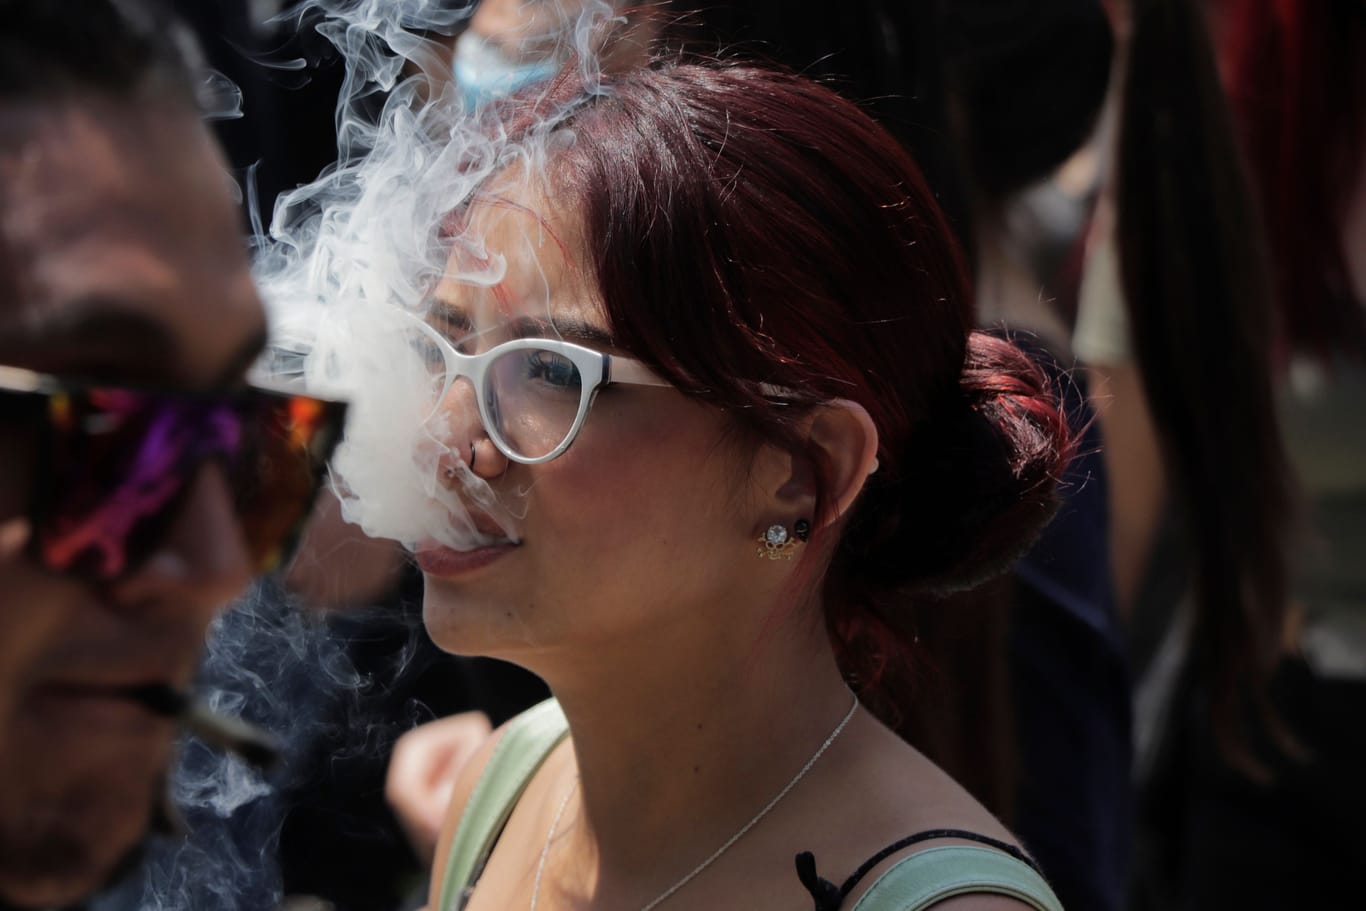 Eine junge Frau stößt Rauch aus (Archivbild): Ärzte halten die Legalisierung von Cannabis für fatal für gefährdete Jugendliche,